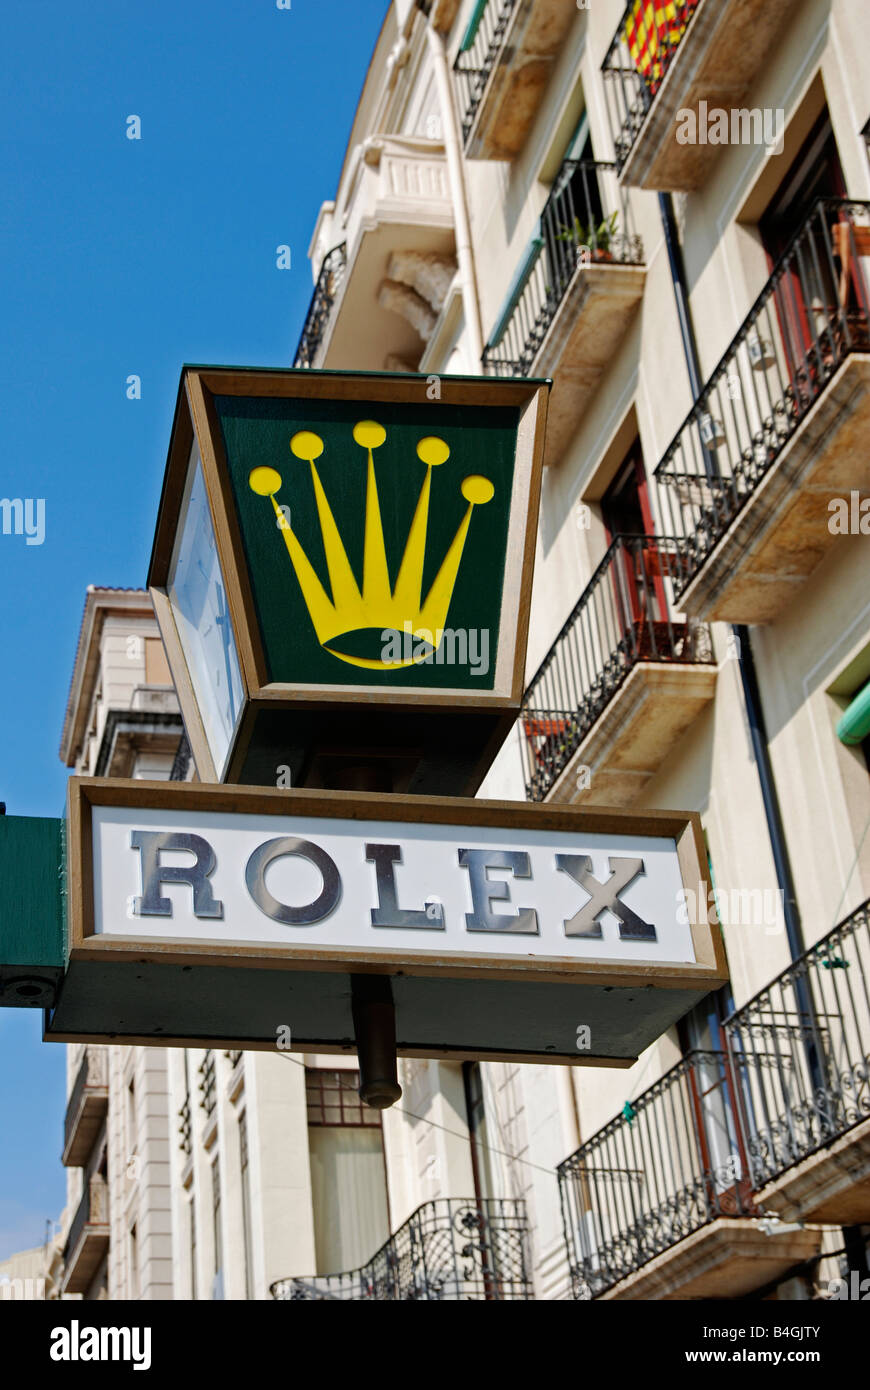 Rolex symbol immagini e fotografie stock ad alta risoluzione - Alamy